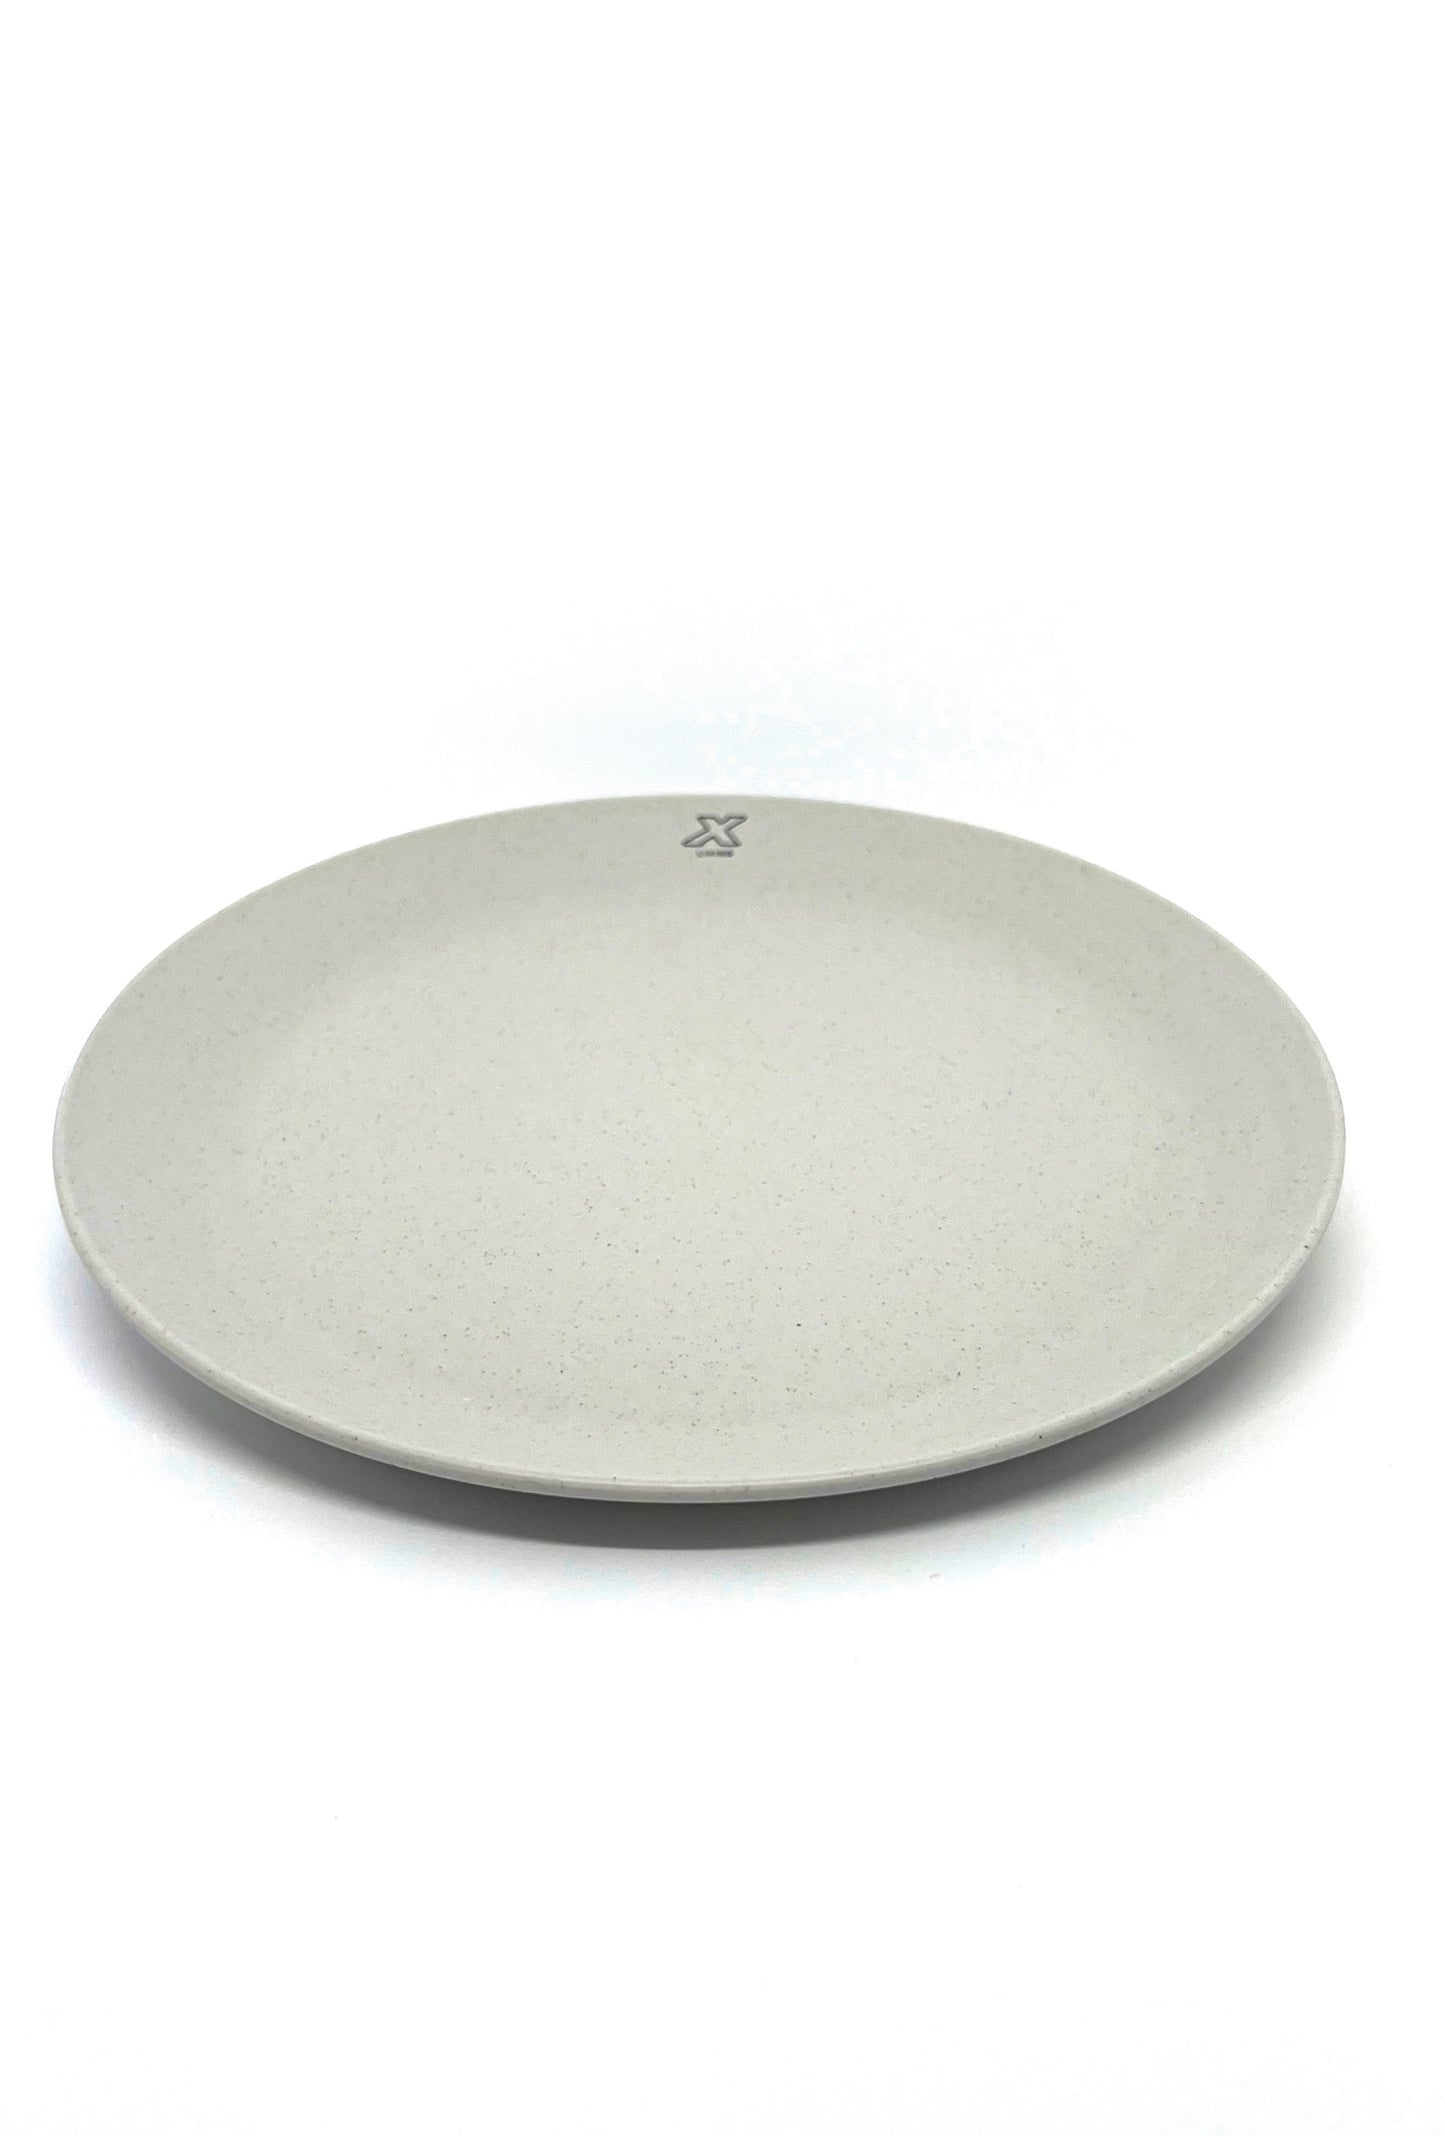 Dinner plate - Pebble white (280 mm.)